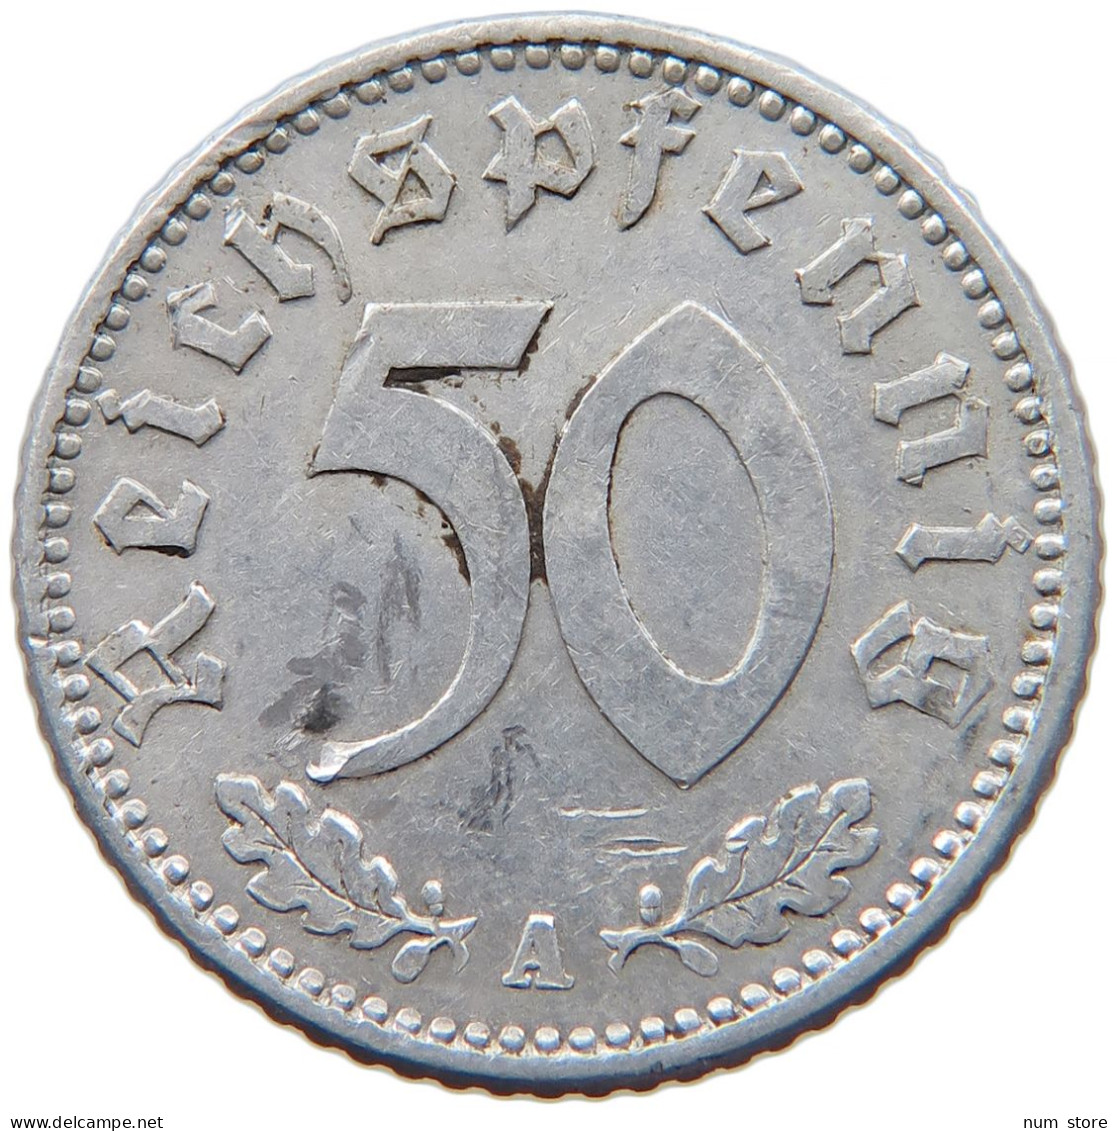 GERMANY 50 REICHSPFENNIG 1943 A #s089 0541 - 50 Reichspfennig